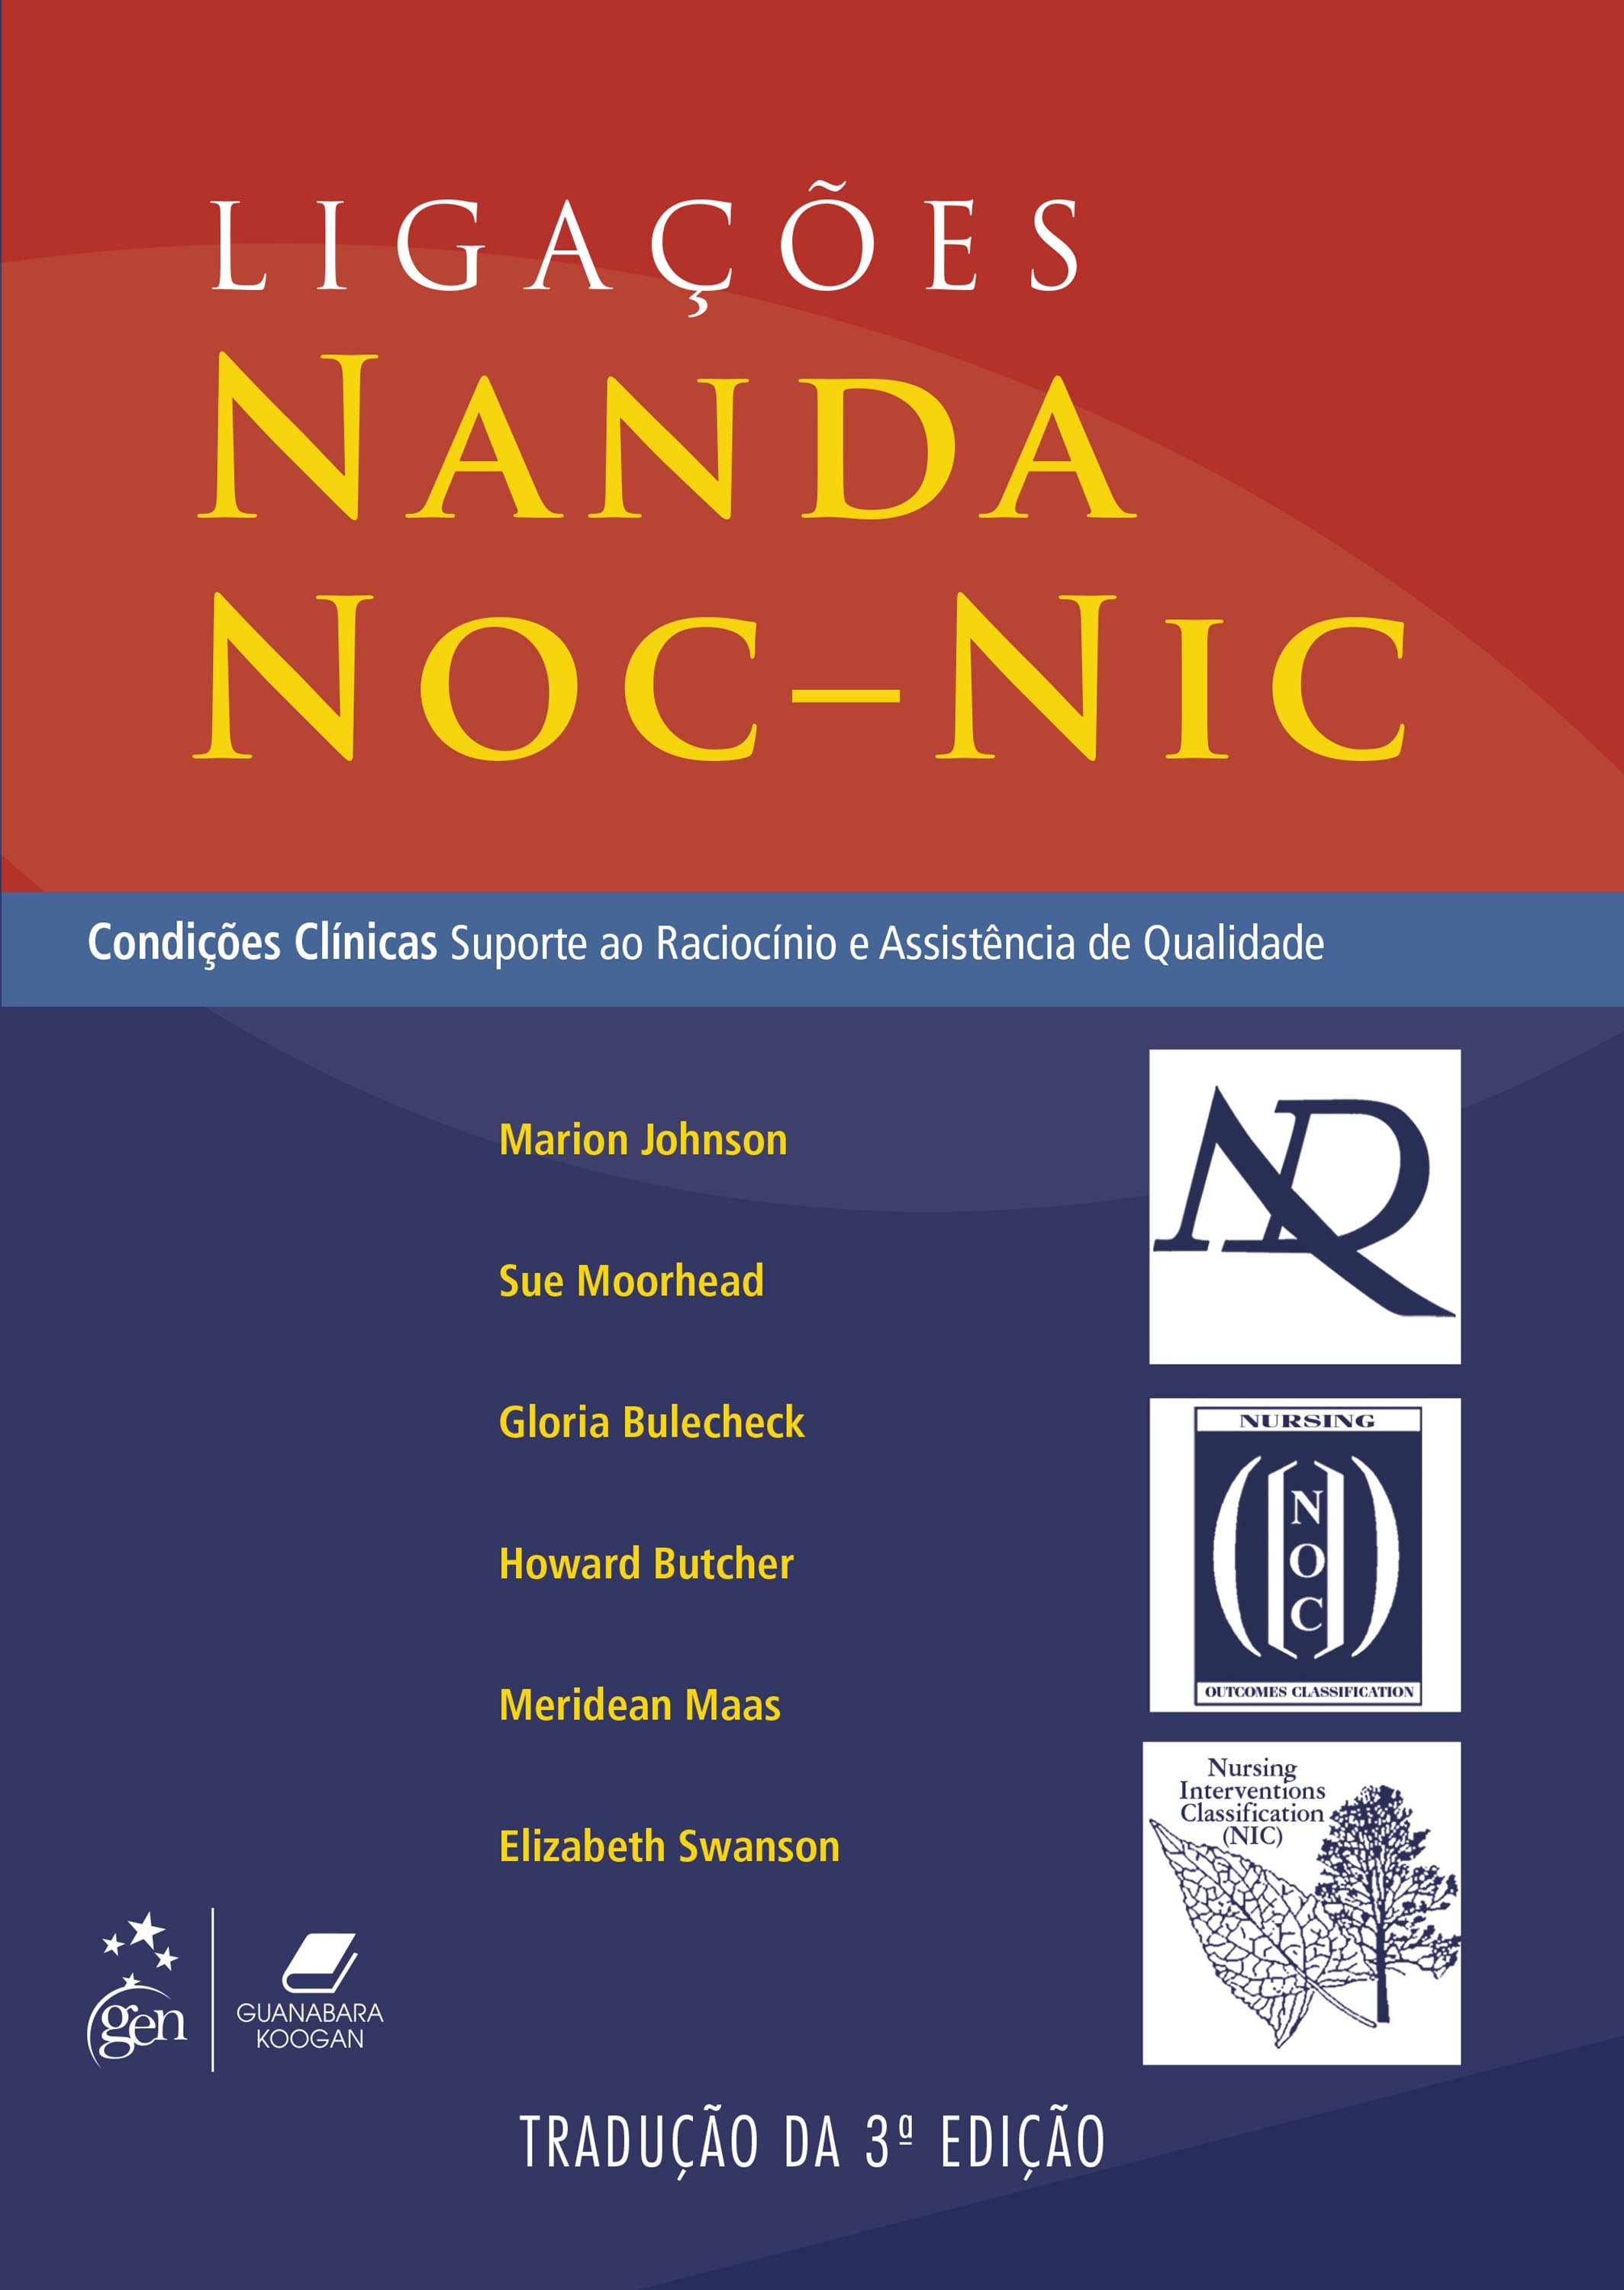 Ligações NANDA NOC - NIC